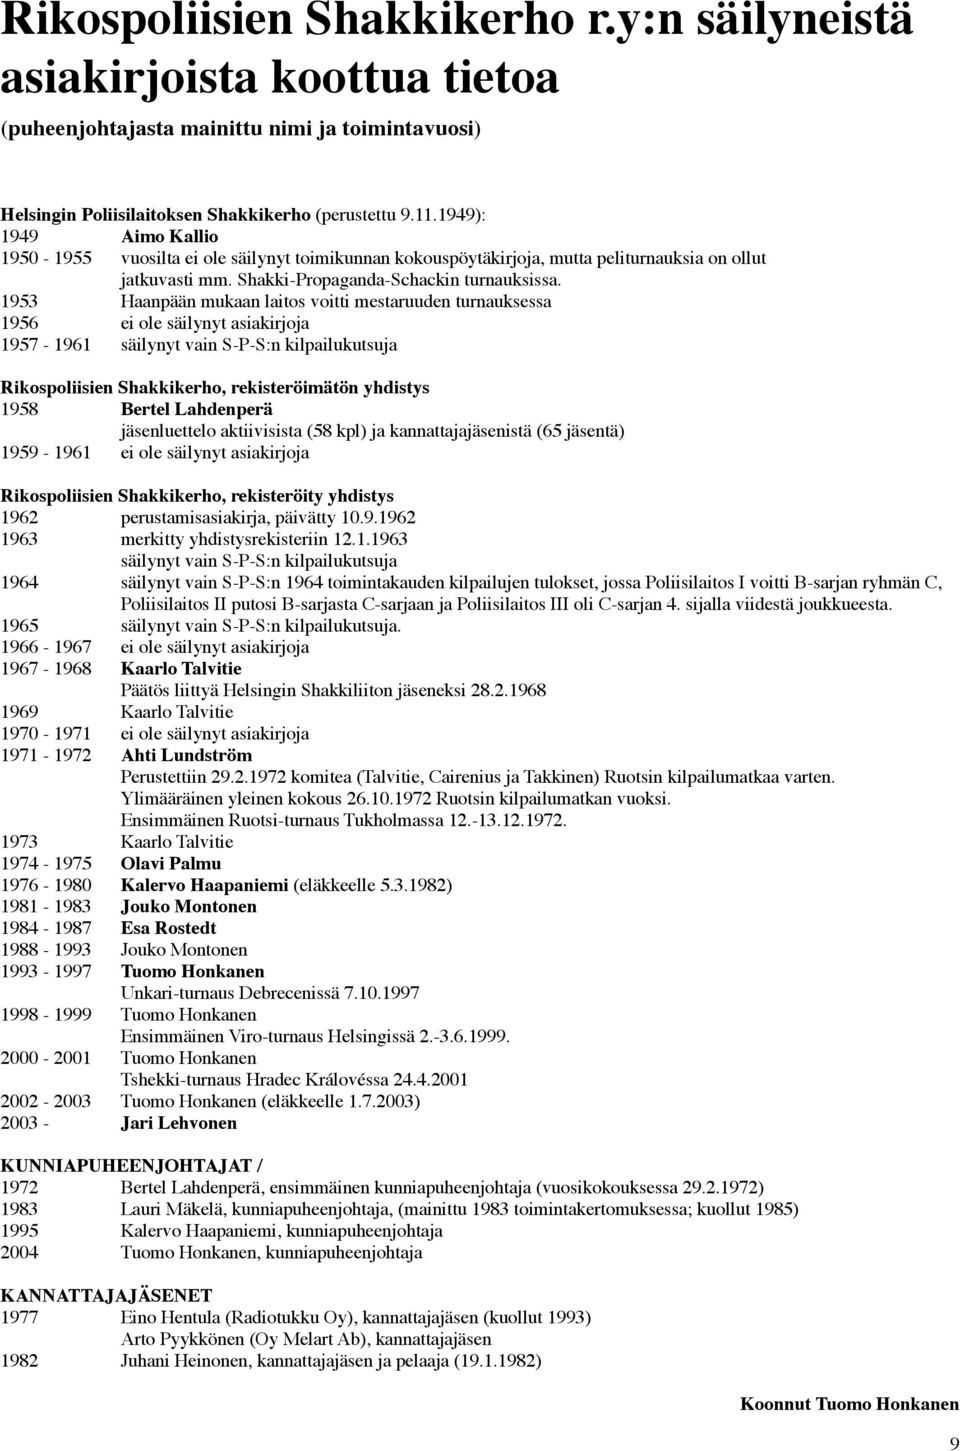 1953 Haanpään mukaan laitos voitti mestaruuden turnauksessa 1956 ei ole säilynyt asiakirjoja 1957-1961 säilynyt vain S-P-S:n kilpailukutsuja Rikospoliisien Shakkikerho, rekisteröimätön yhdistys 1958